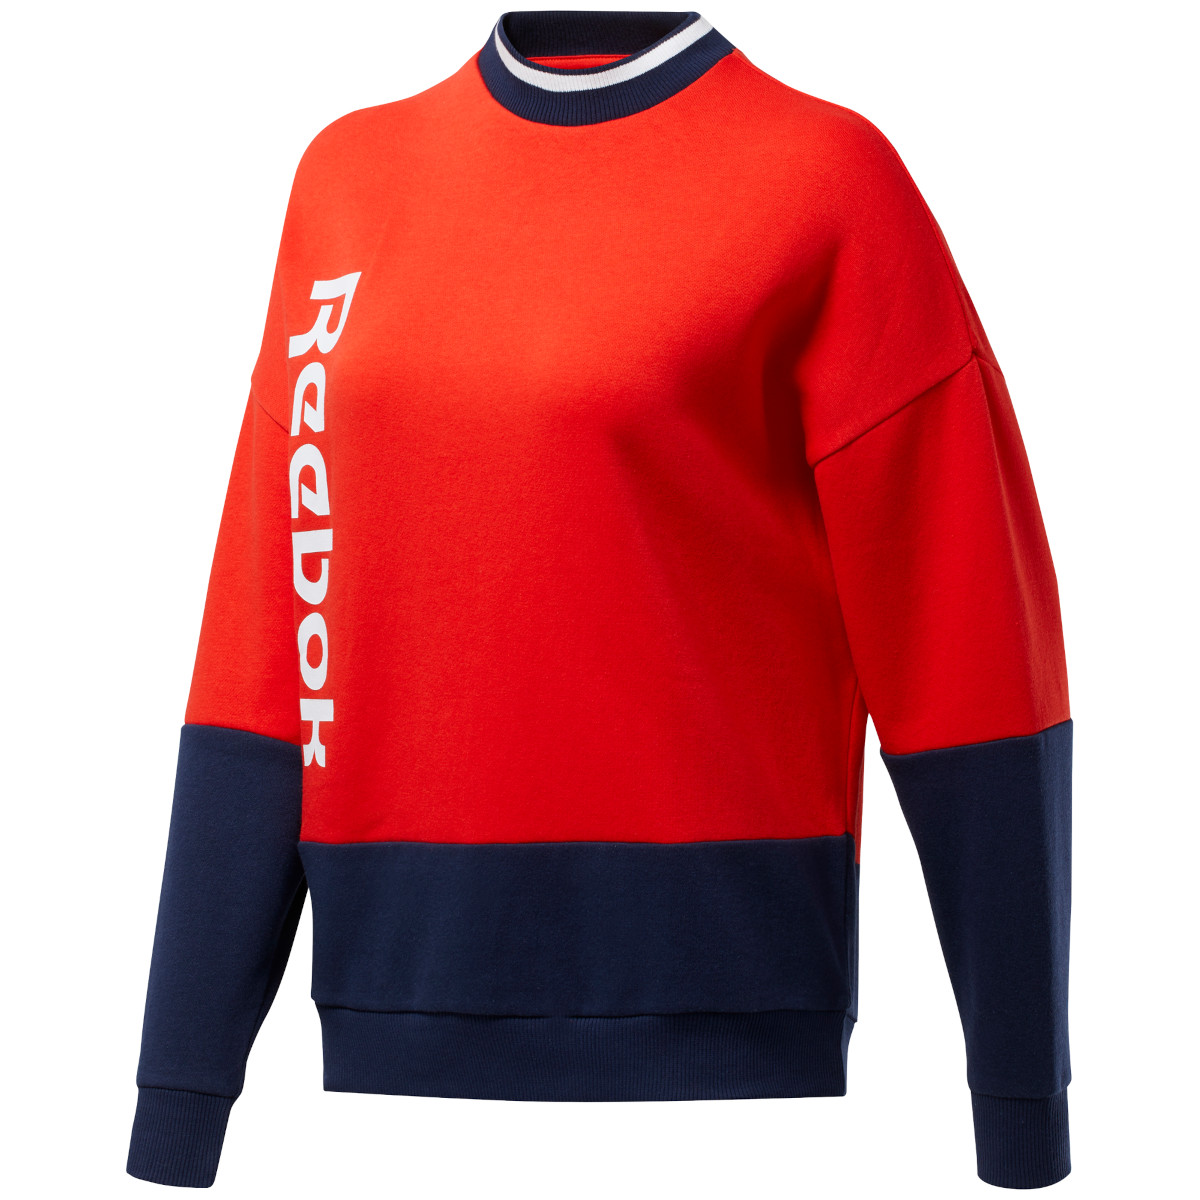 Produktbild von Reebok Training Essentials Linear Logo Crew Sweatshirt Damen - instinct red FT0903